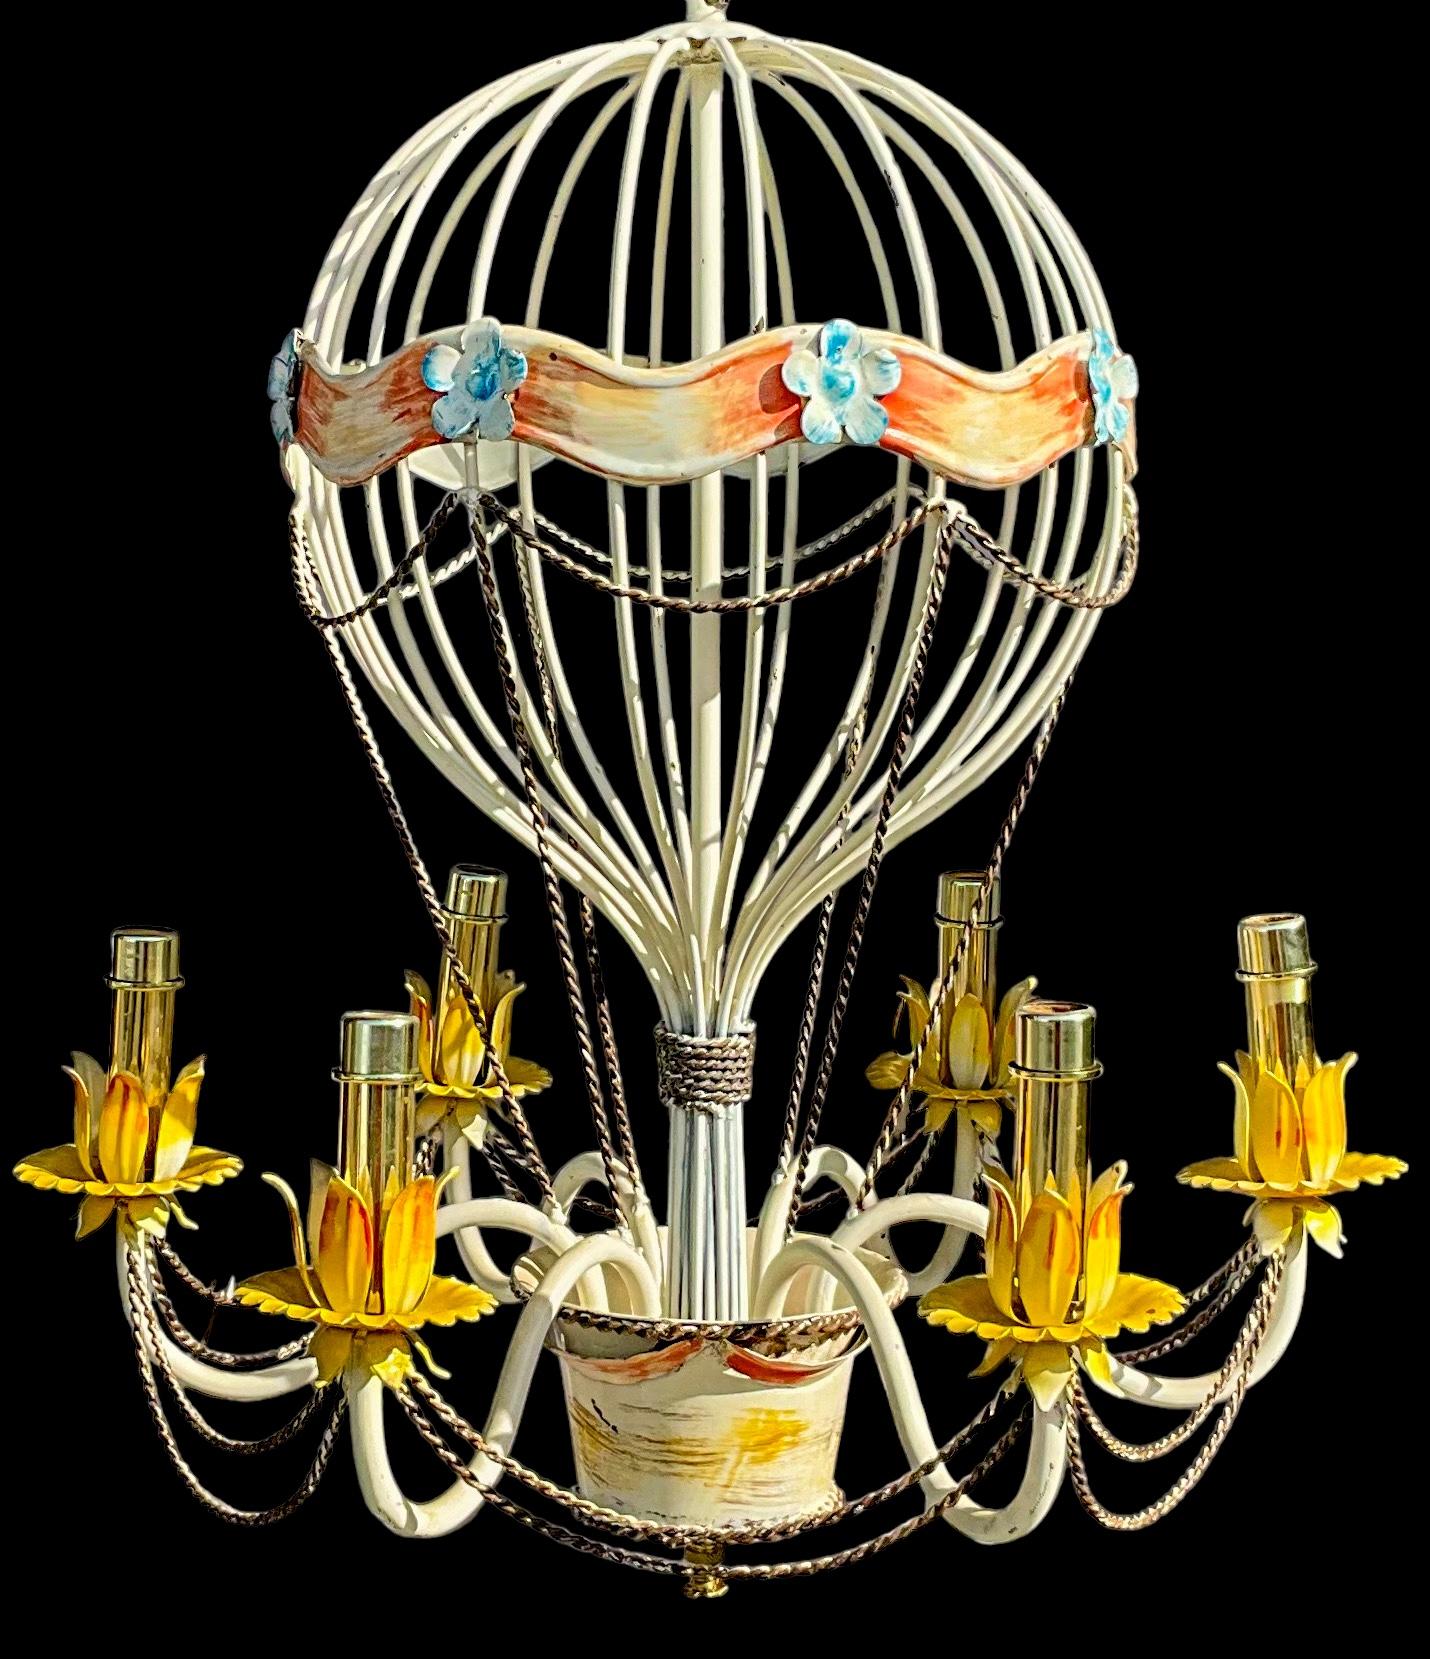 C'est un très bel appareil ! Il s'agit d'un lustre en forme de montgolfière en métal italien du milieu du siècle, de style français. Il possède 6 bras et 38